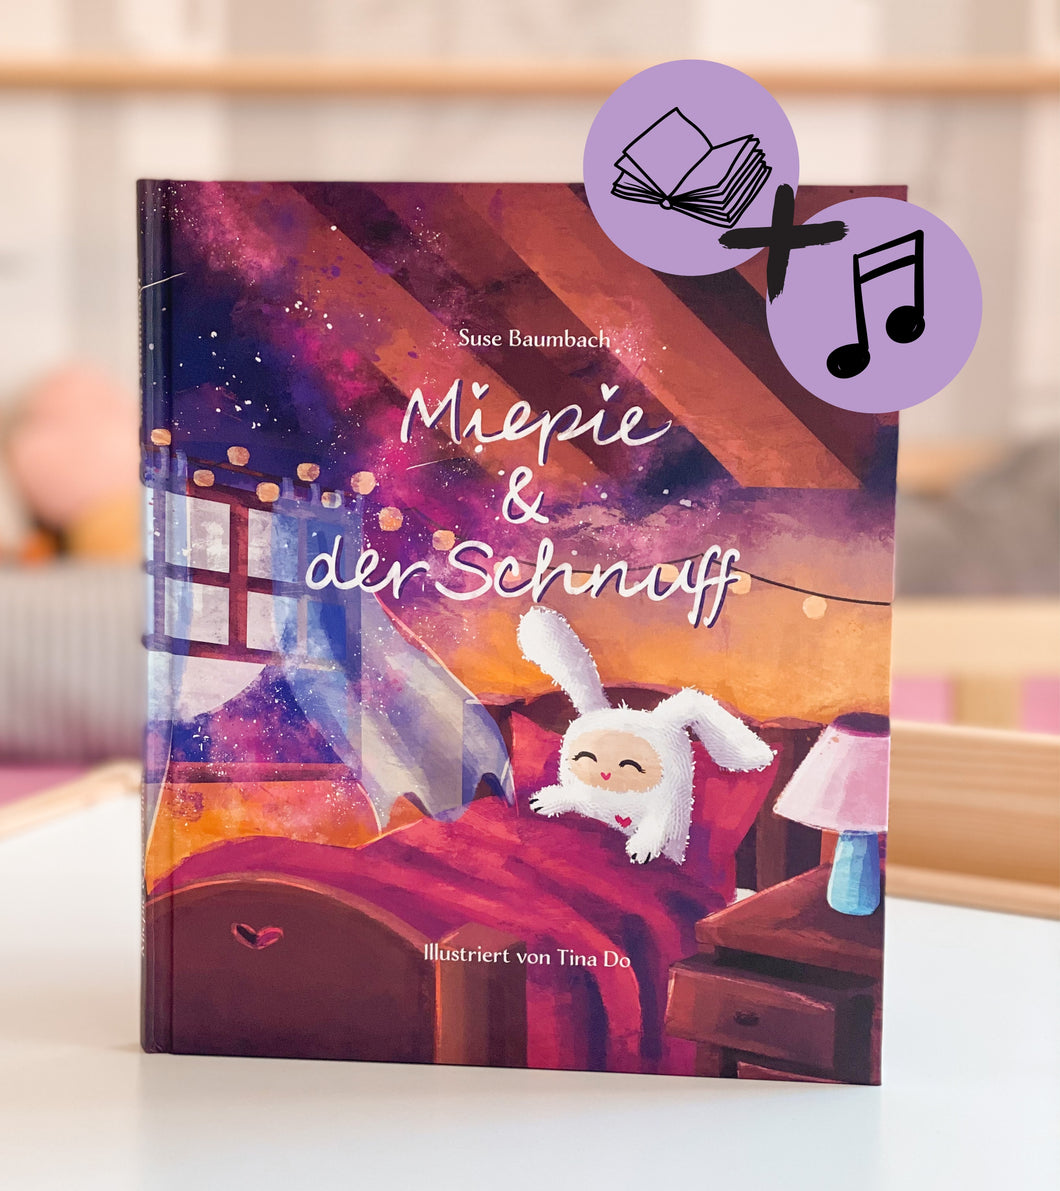 Miepie & der Schnuff - Bundle aus Buch & Hörbuch